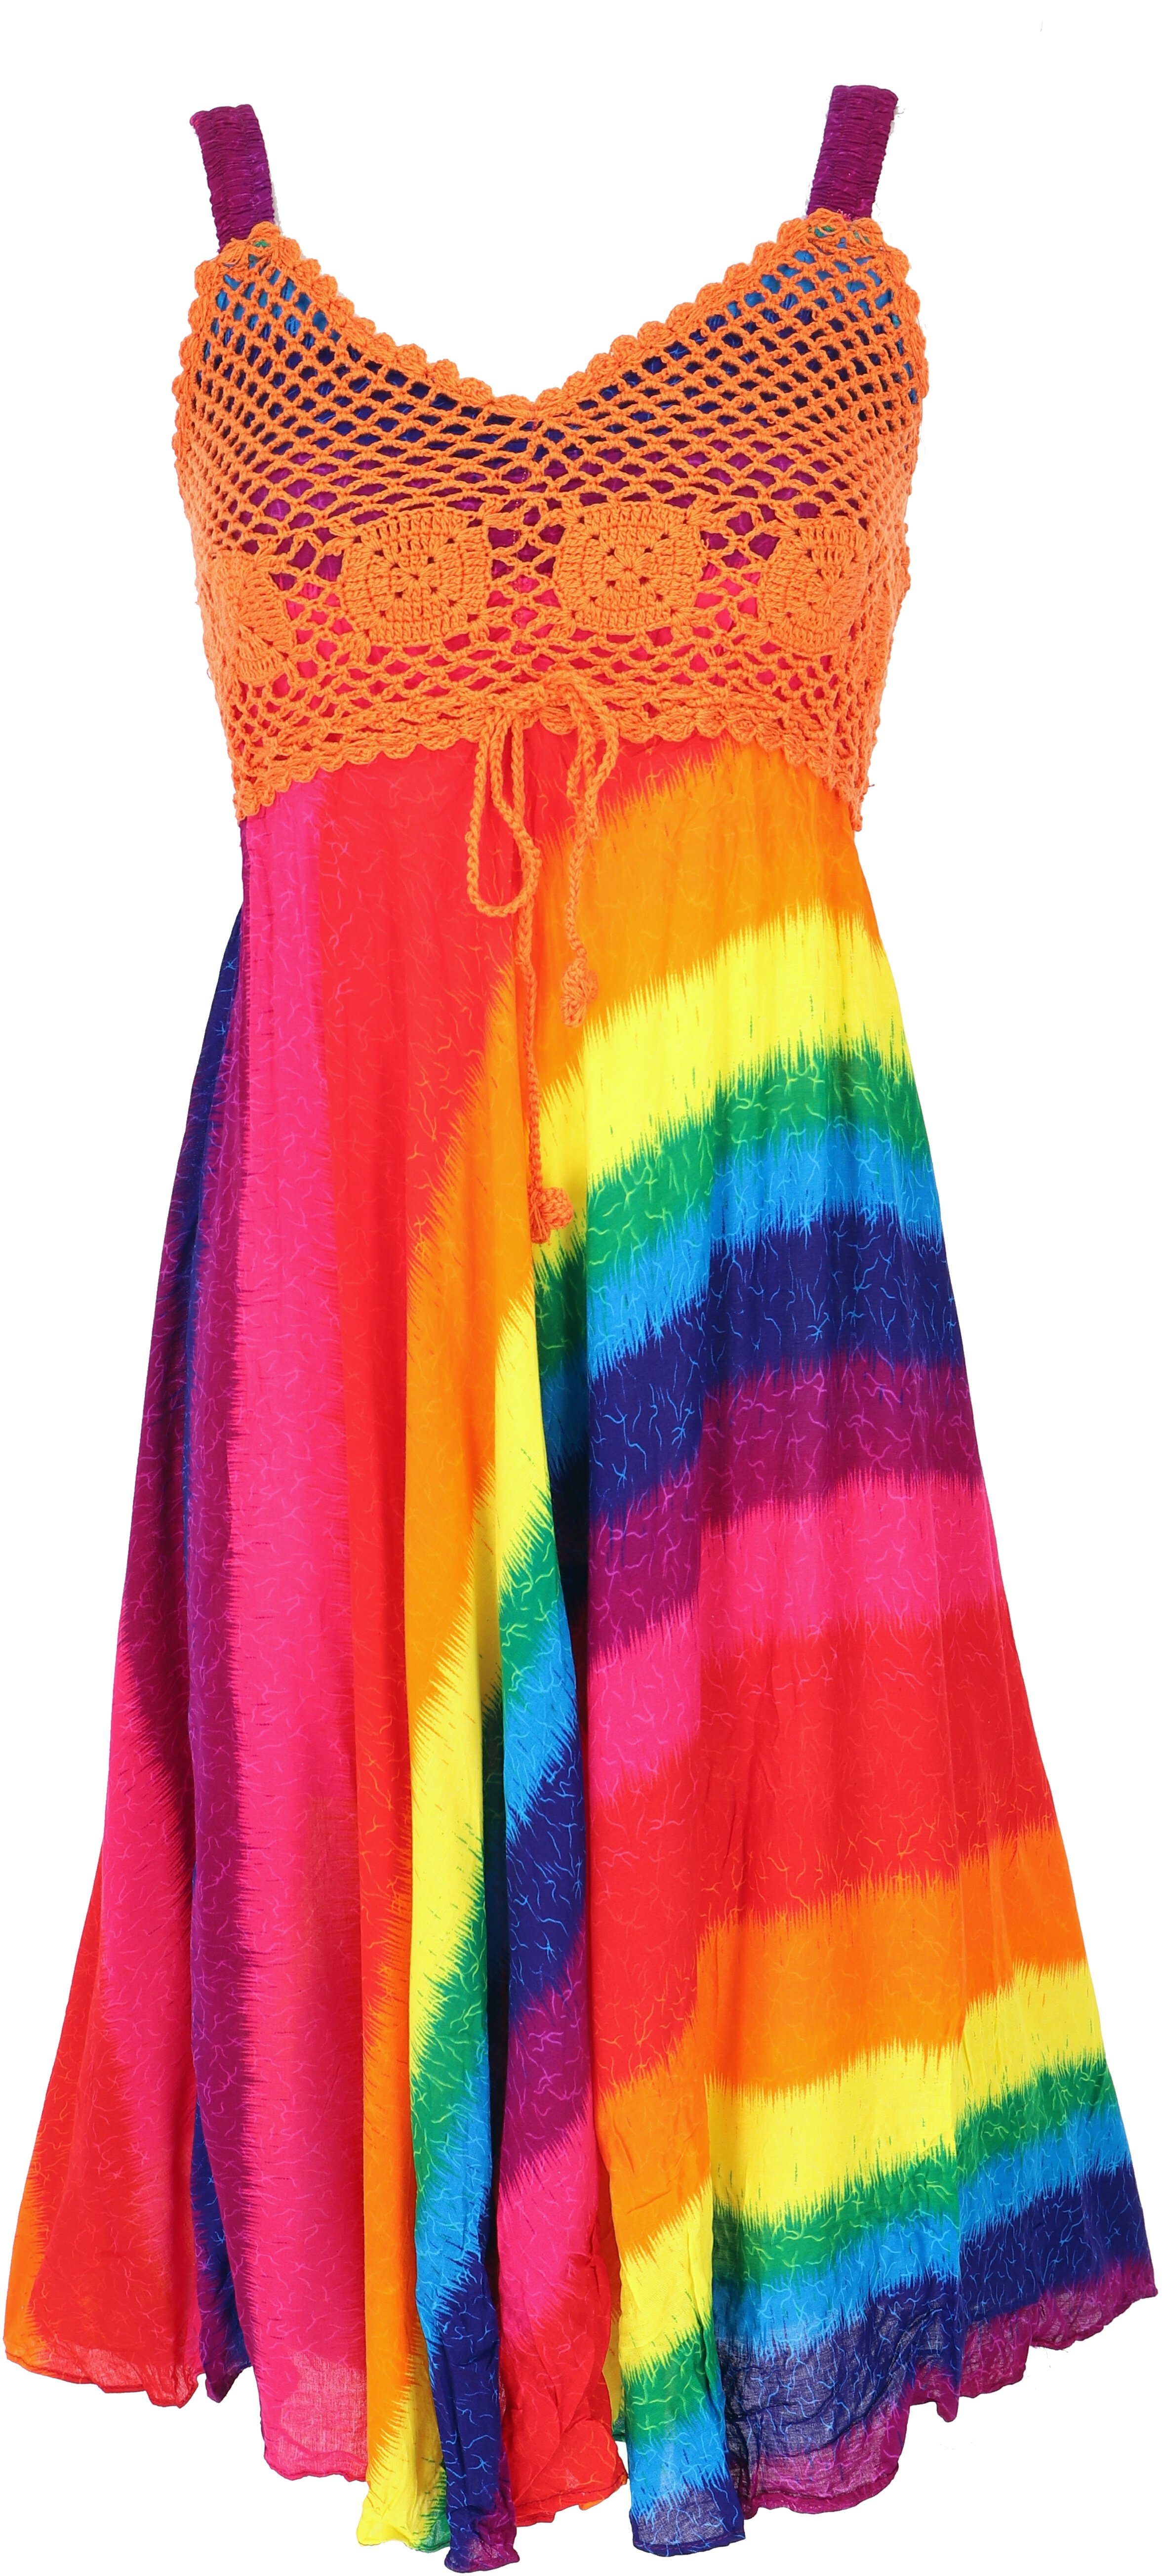 Guru-Shop Midikleid Boho regenbogen/orange Krinkelkleid alternative Minikleid, -.. Bekleidung Sommerkleid